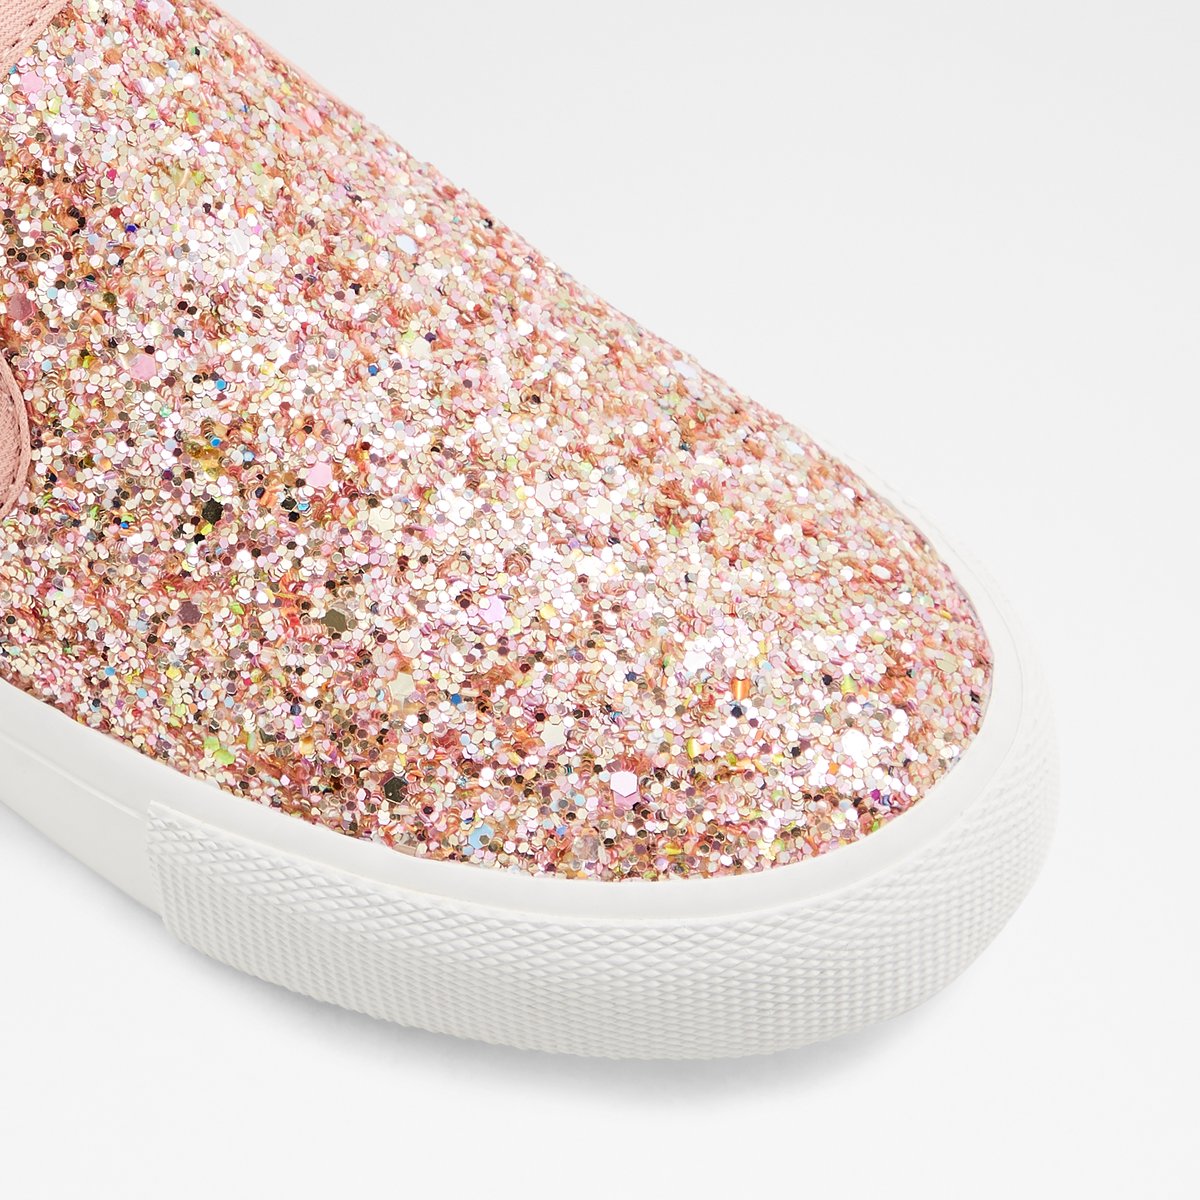 sparkly aldo shoes